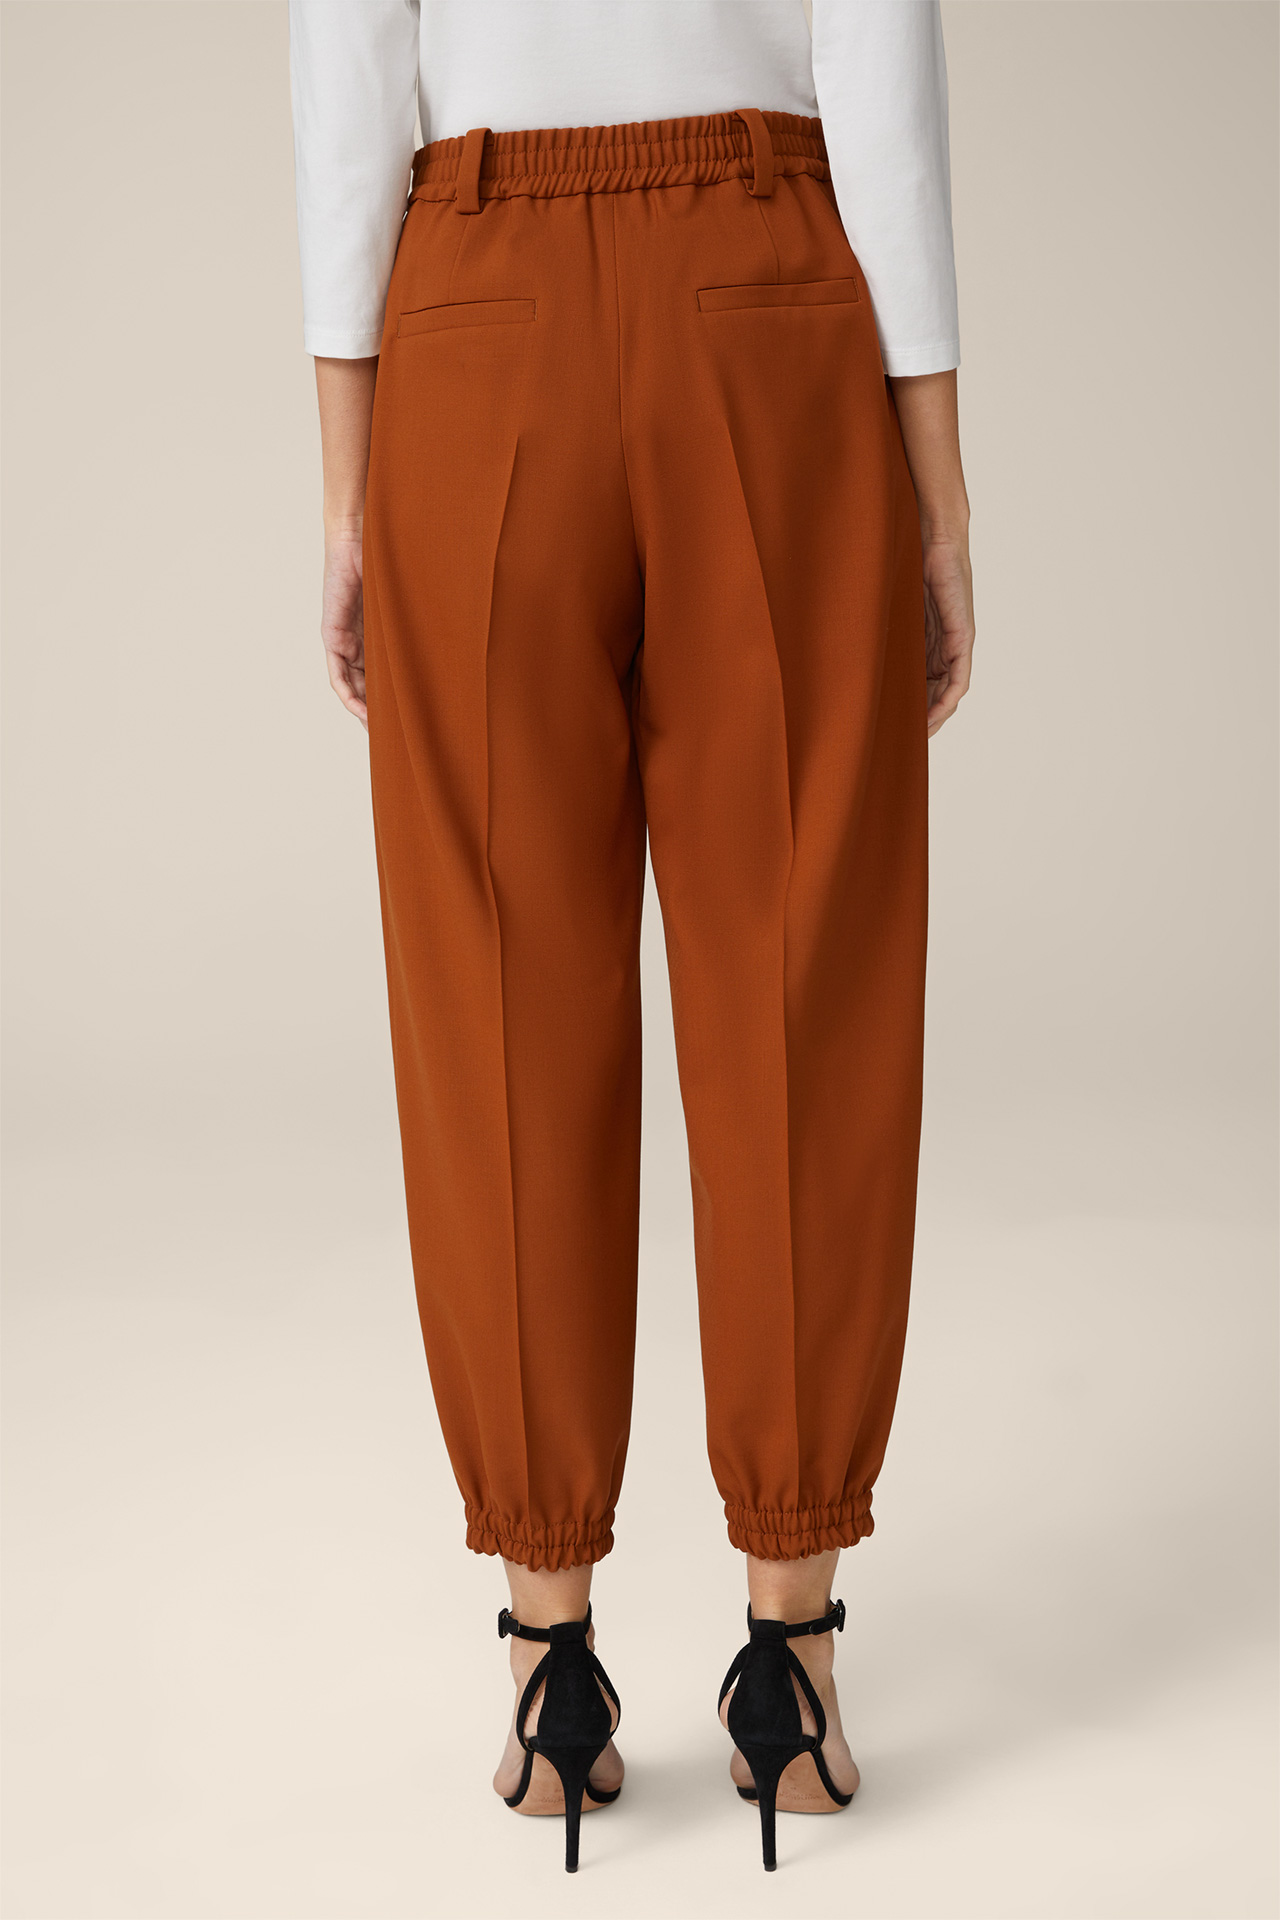 Pantalon en laine stretch de style jogging, couleur cuivre